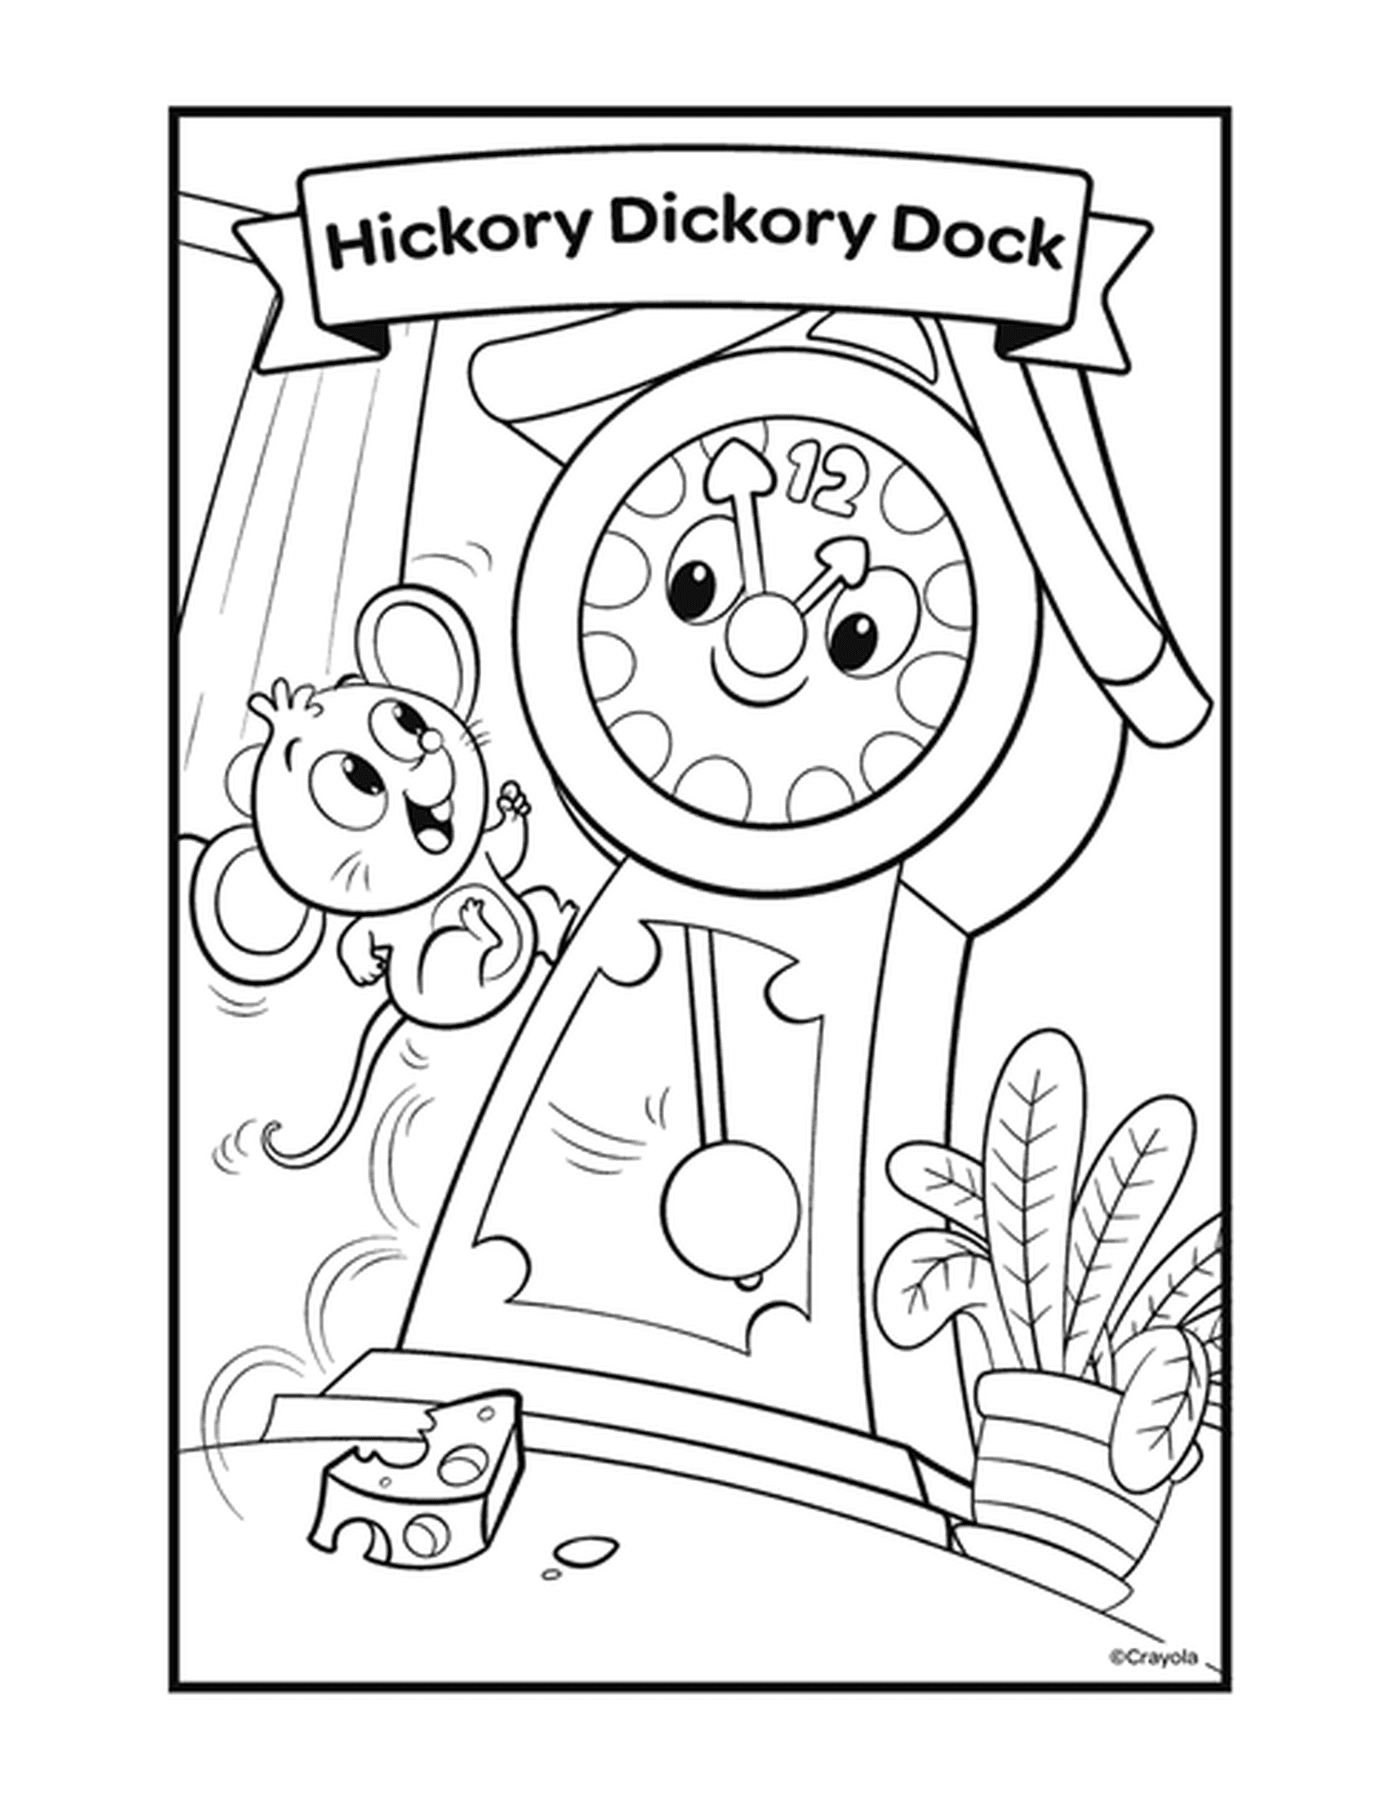  Hickory Dickory Dock com um relógio e um mouse 